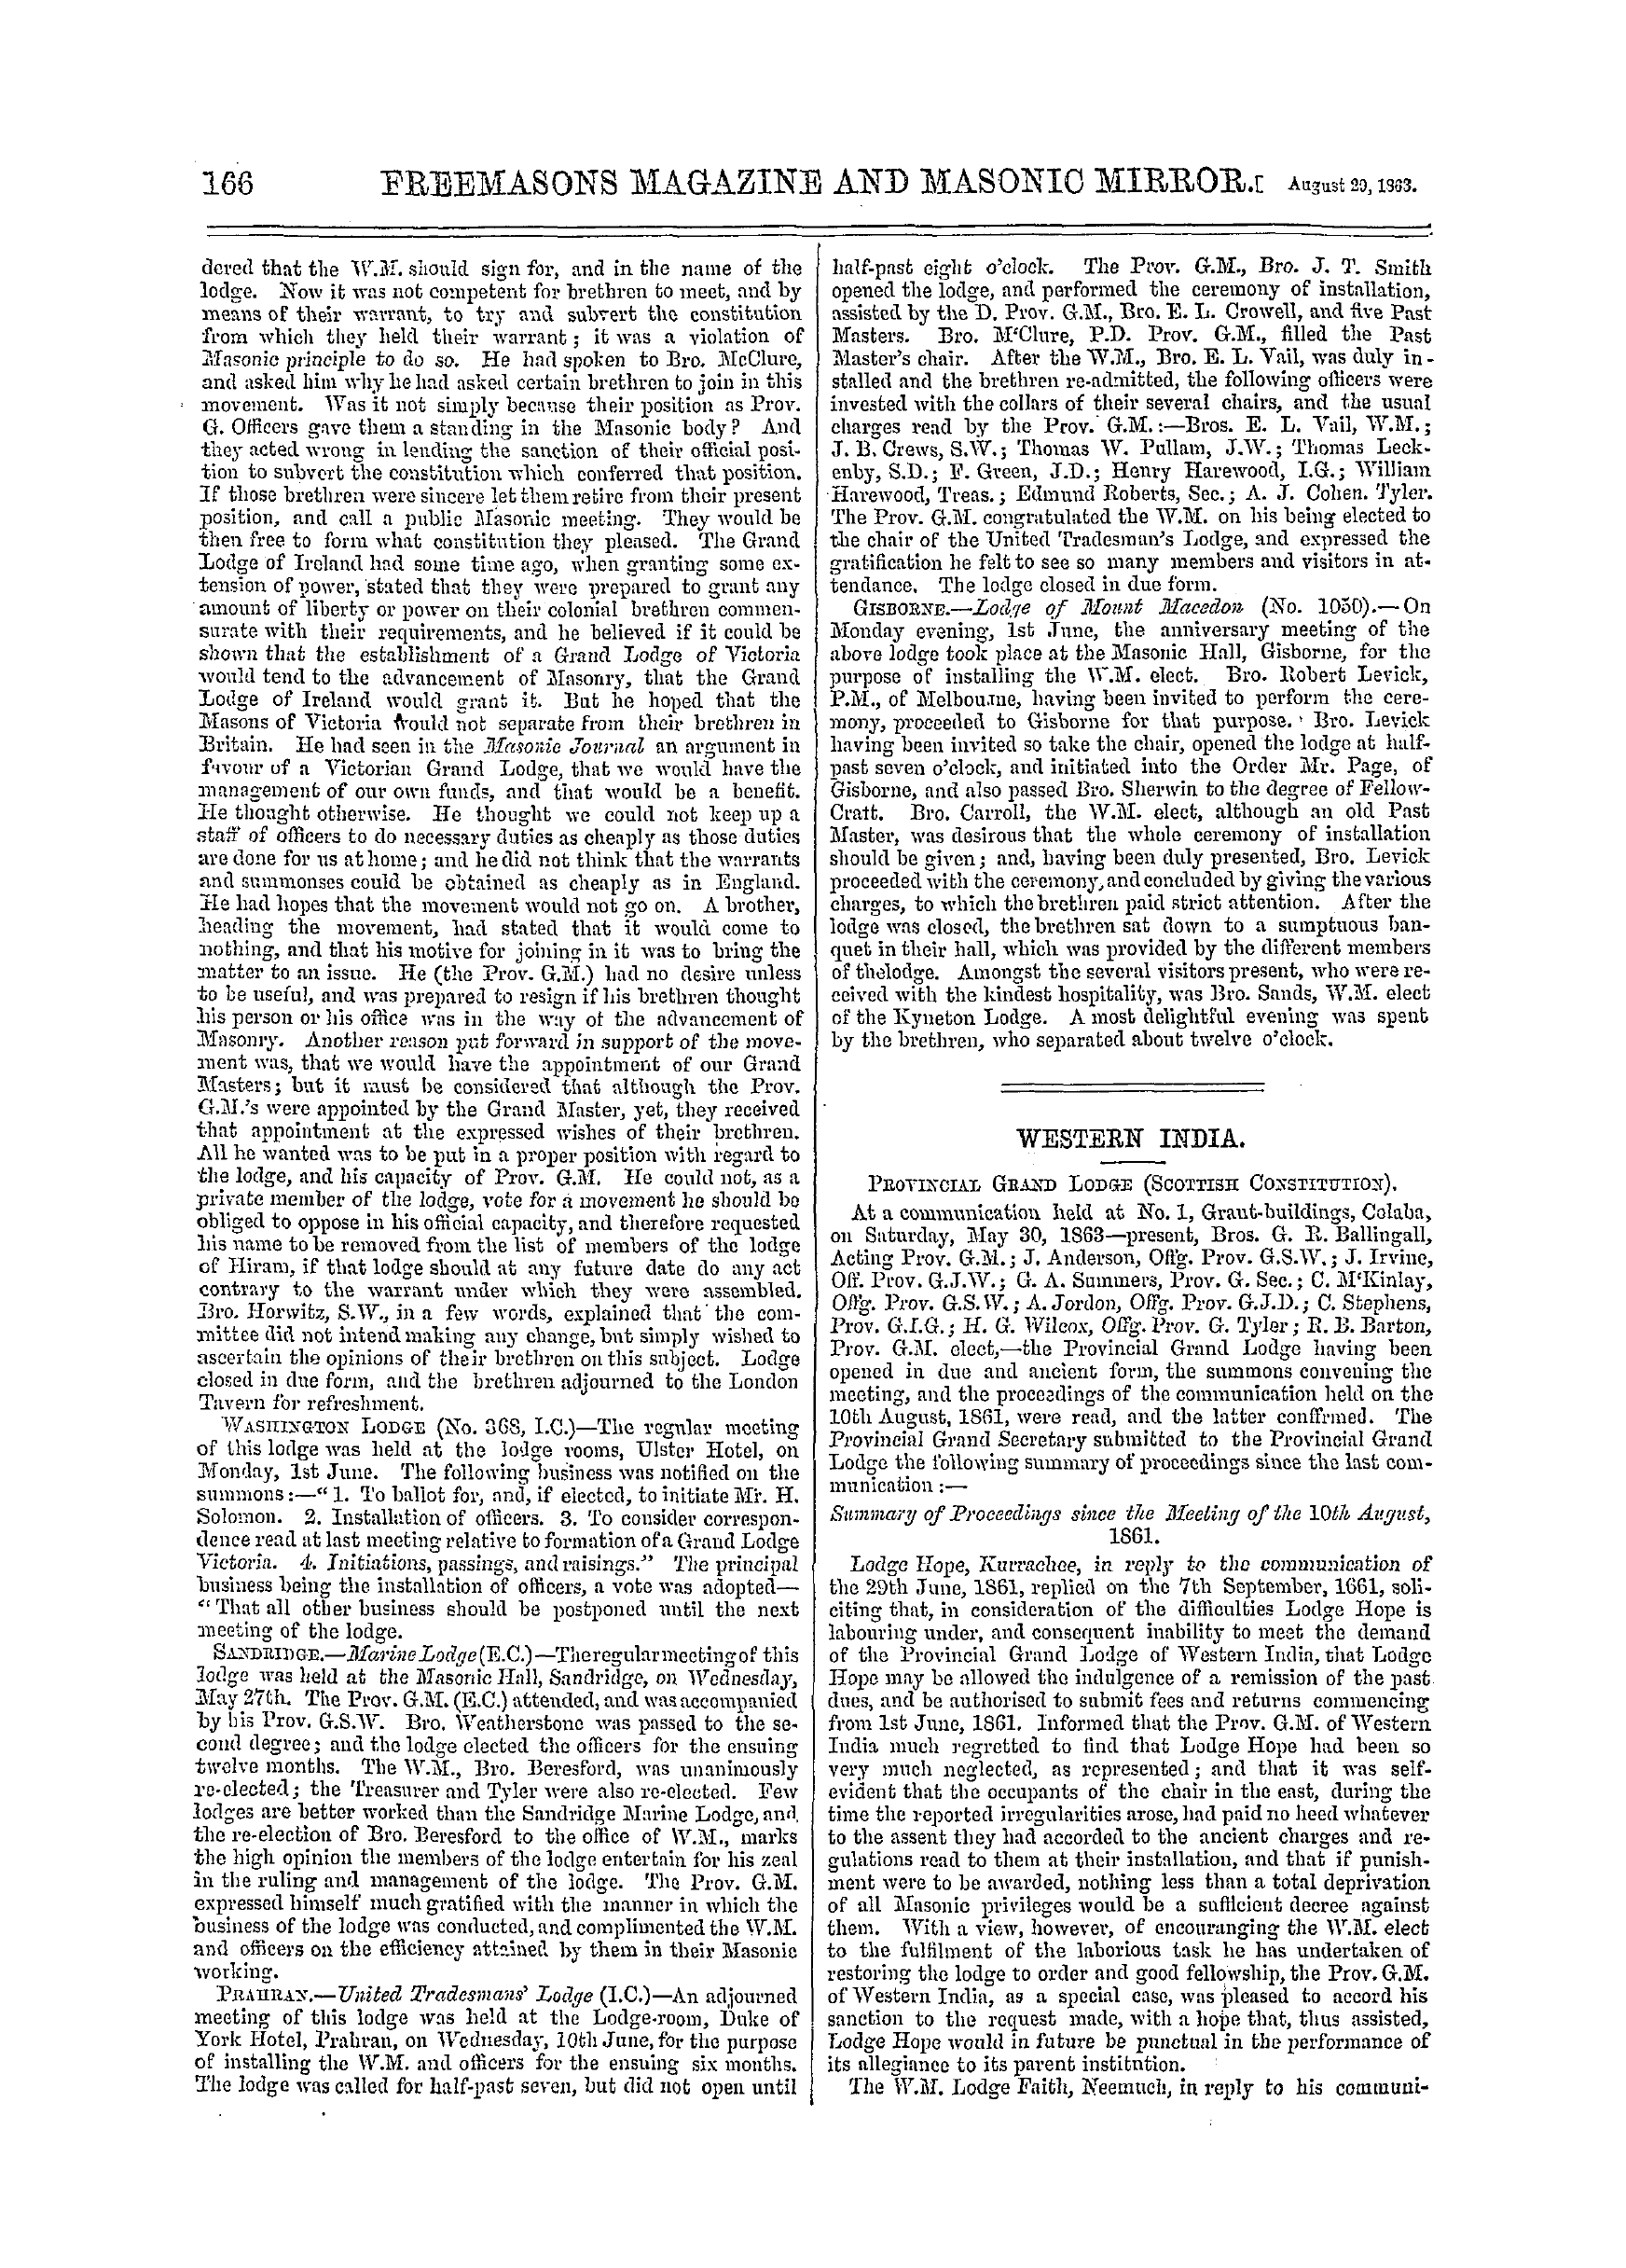 The Freemasons' Monthly Magazine: 1863-08-29: 14